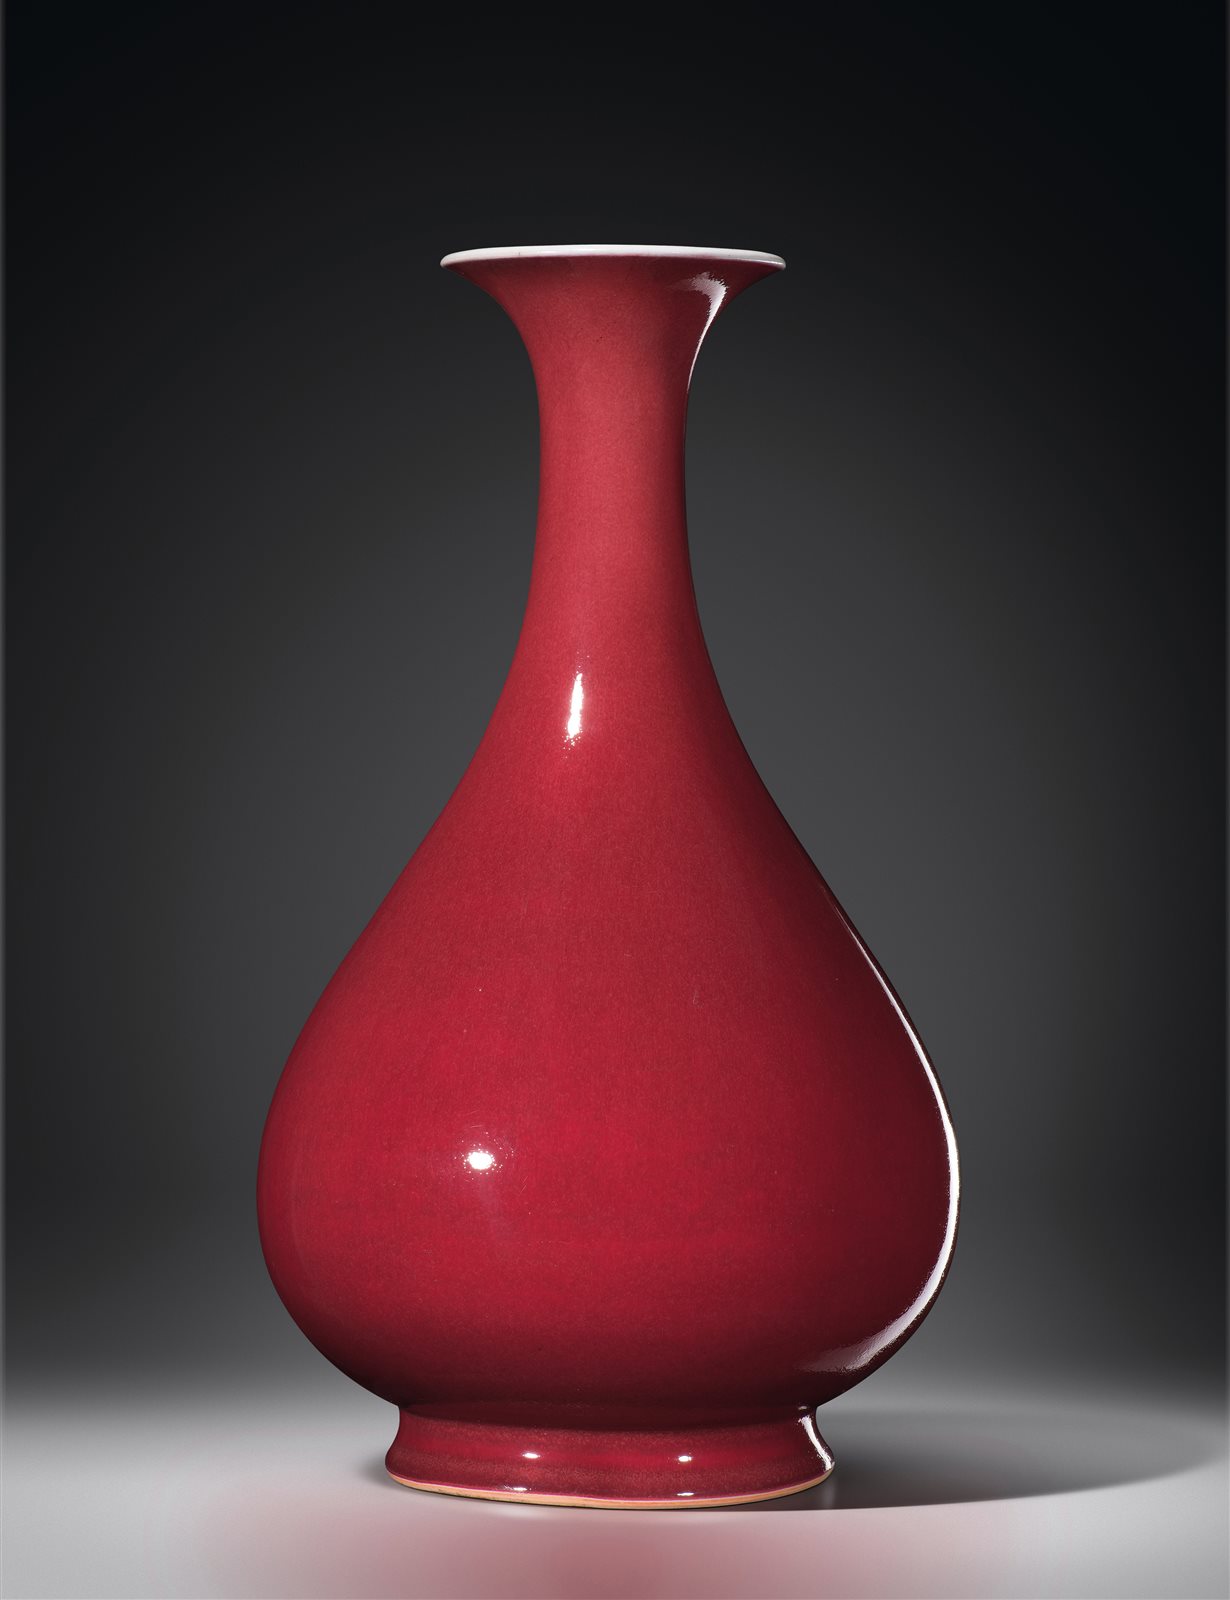 霁红釉玉壶春瓶